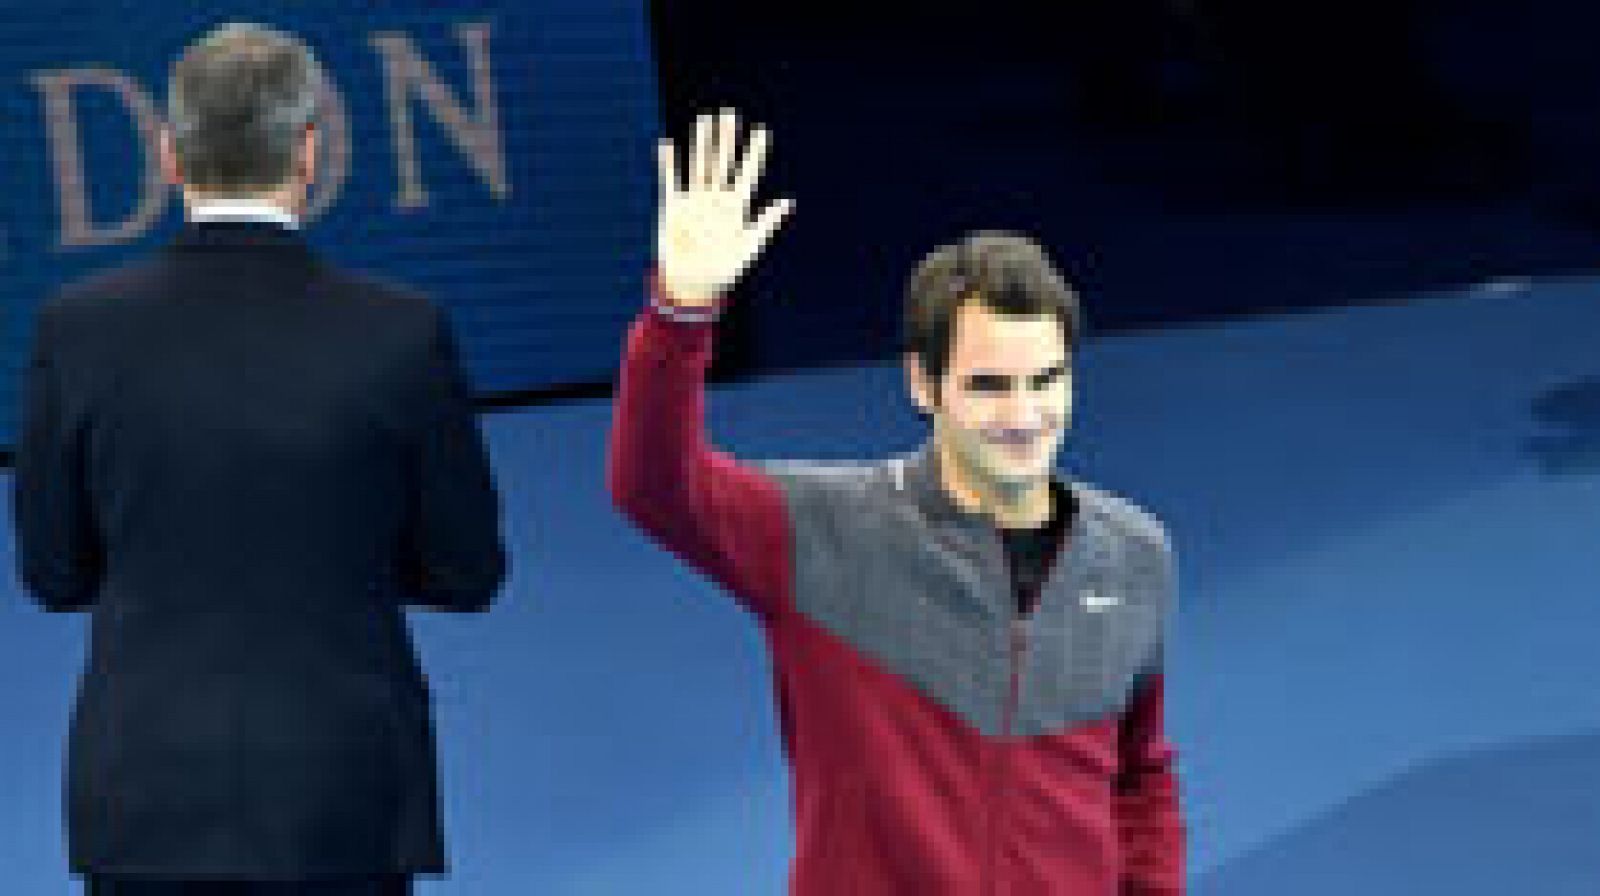 El propio Roger Federer ha anunciado en la pista del O2 de Londres que no disputará la final del Masters contra el serbio Novak Djokovic, debido a problemas en la espalda, por lo que el serbio se proclama campeón sin llegar a jugar.